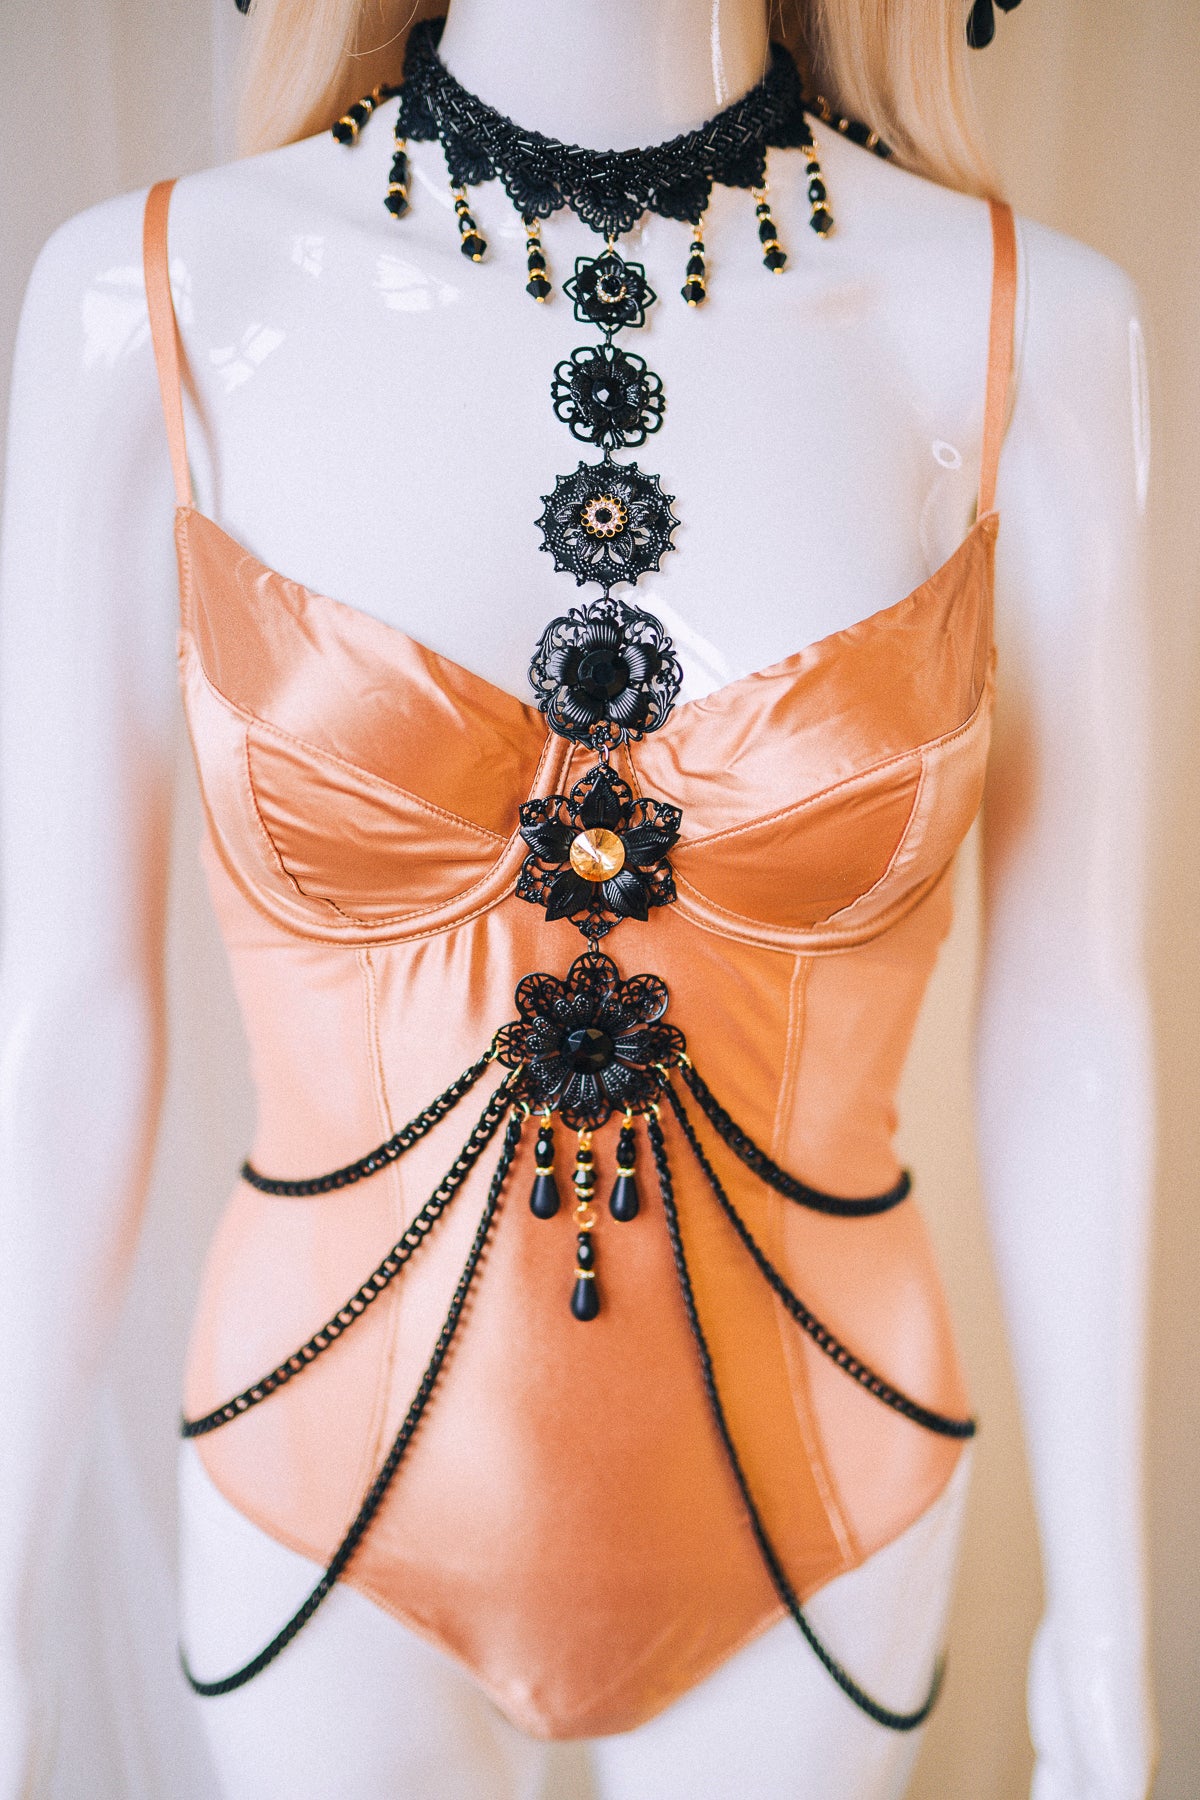 HARNESS Black Harness Festival Fashion Body Jewelry – CARBICKOVA